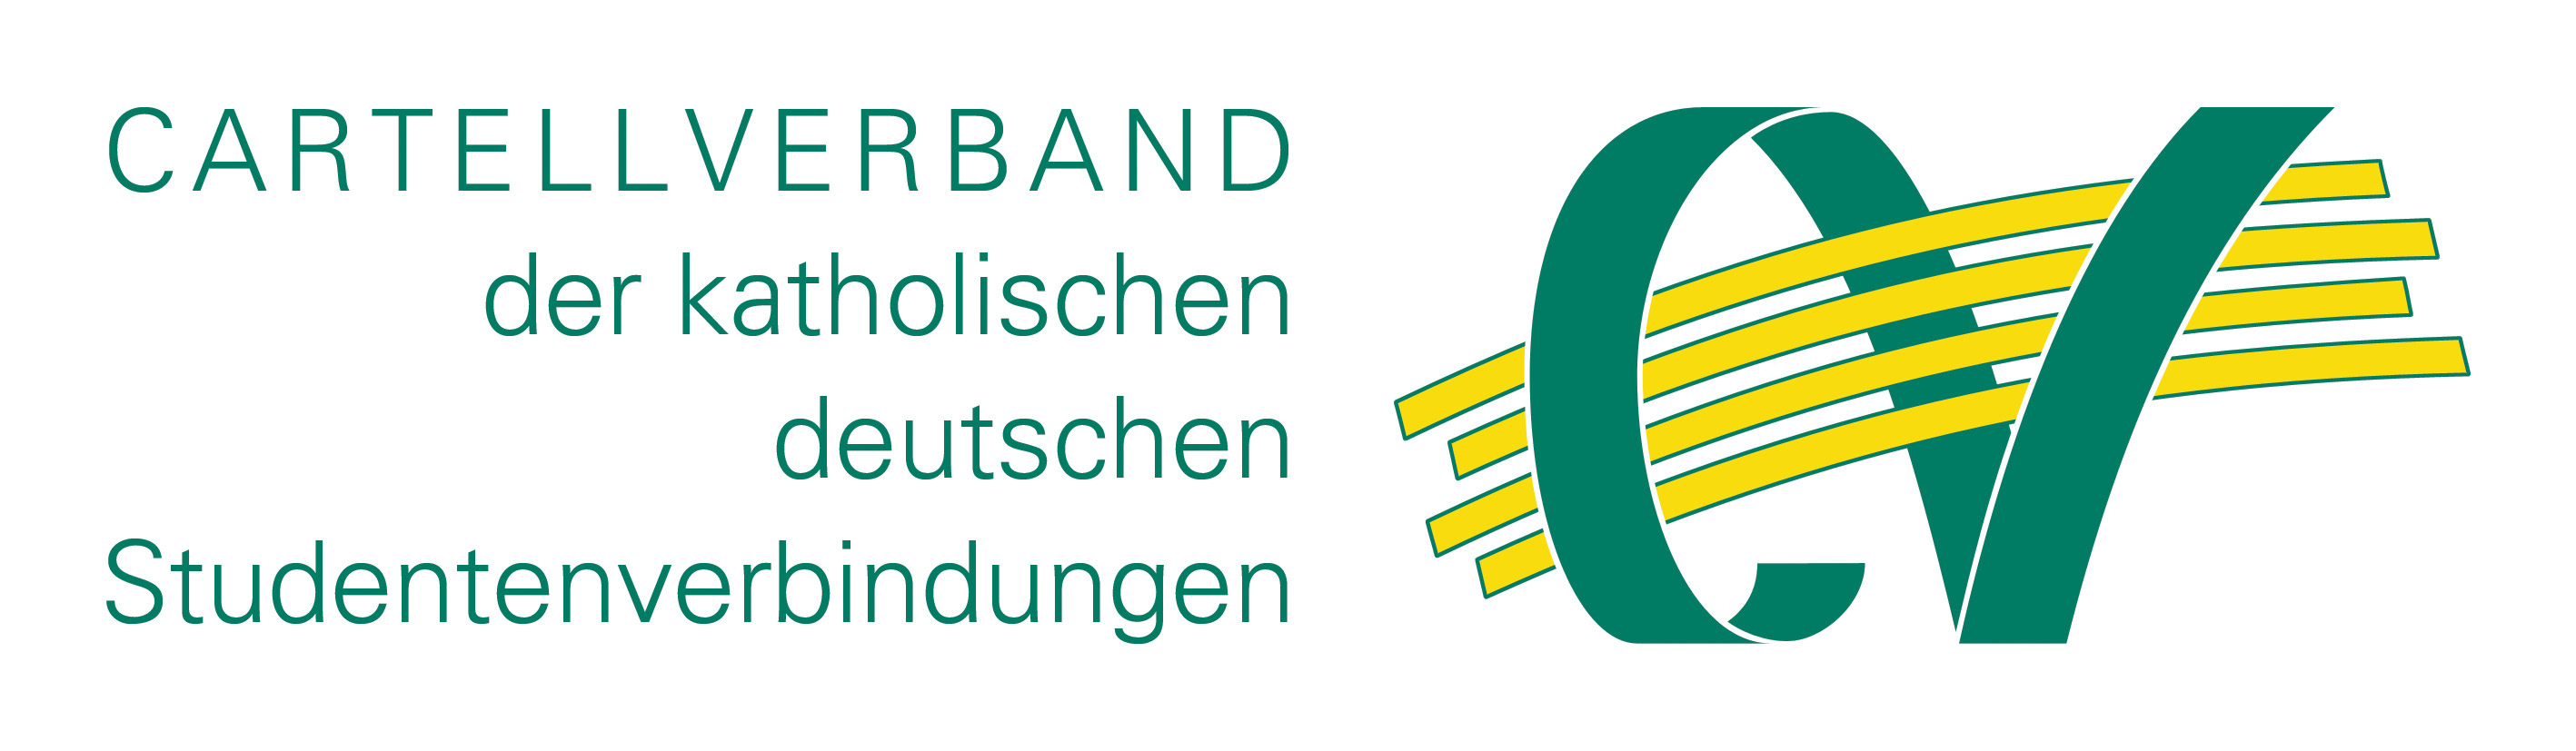 Logo des Cartellverbands der katholischen deutschen Studentenverbindungen